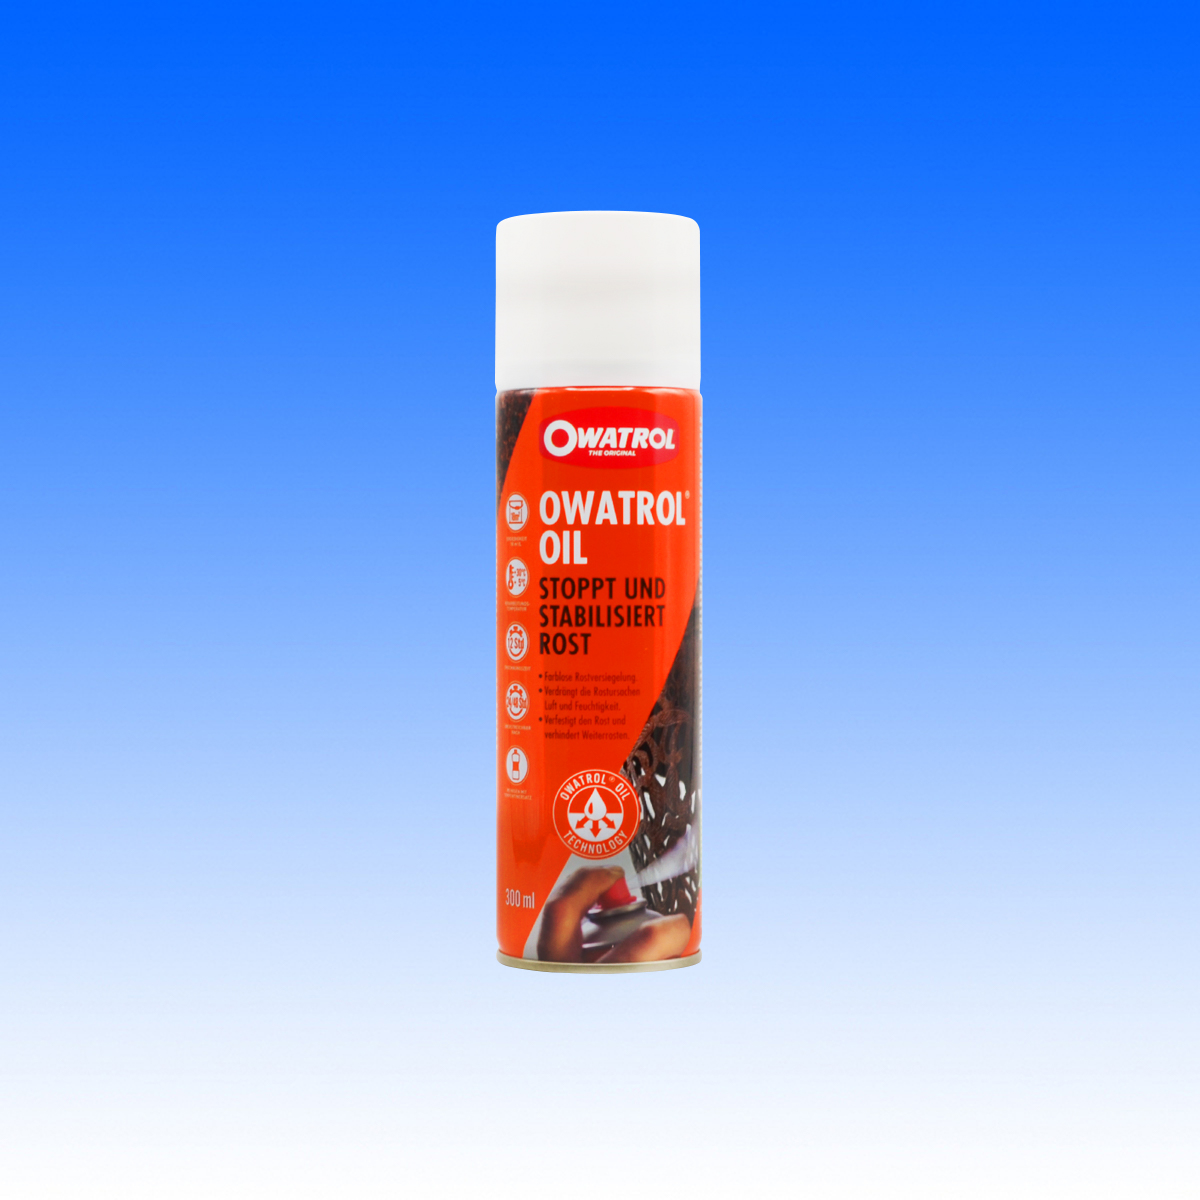 12 Dosen Owatrol Oil Spray für die Profis  streichen24 - Beste Qualität.  Bester Preis.